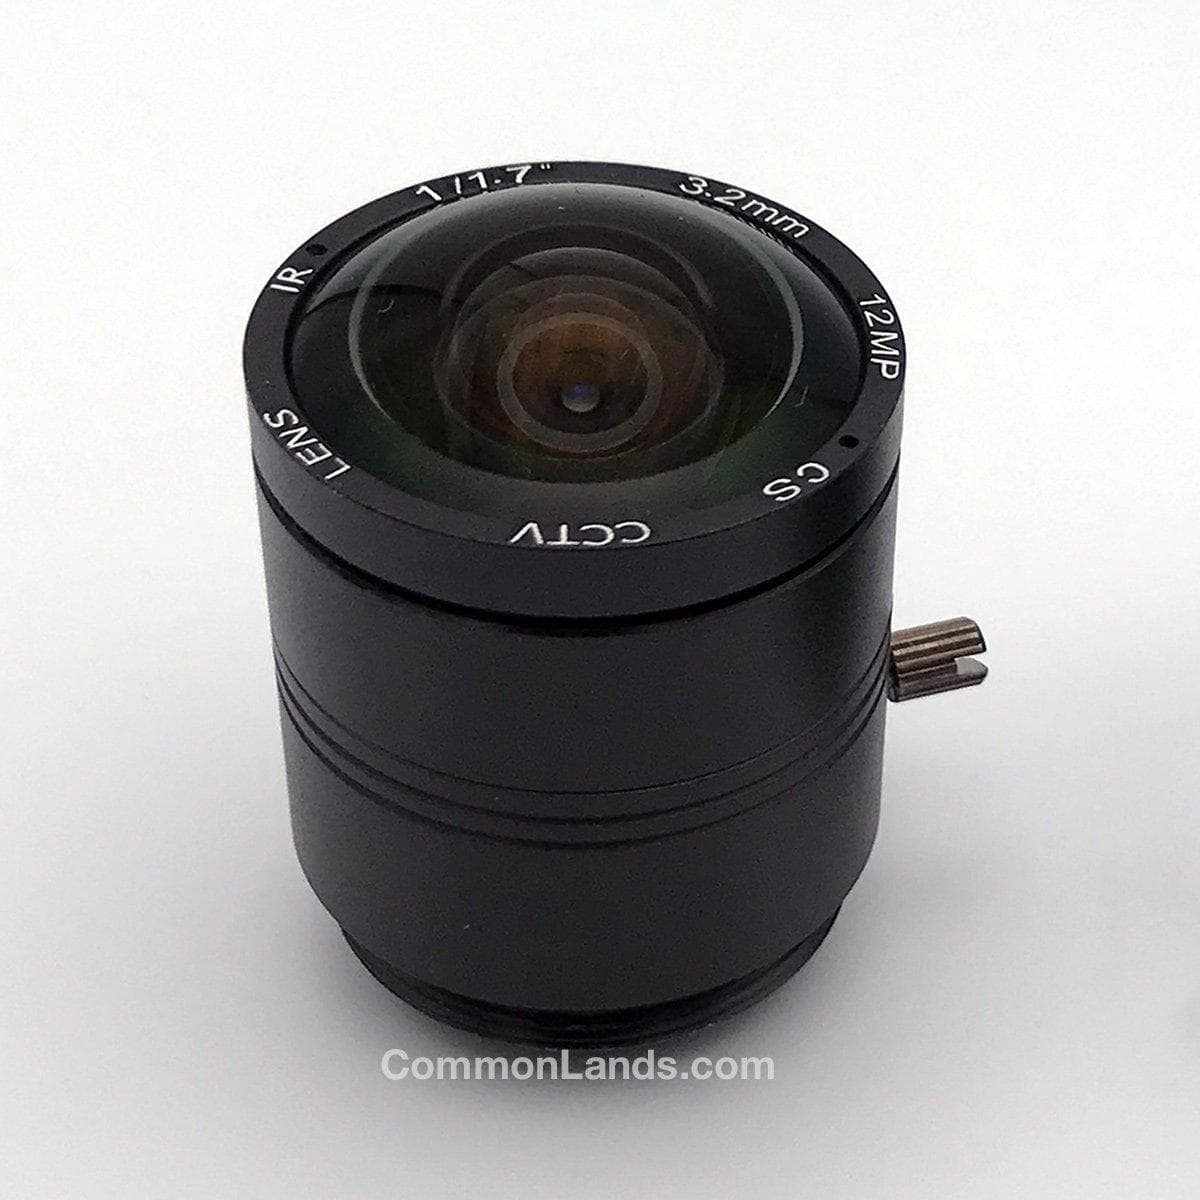 광각 렌즈 보안 카메라용 3.2mm CS 마운트 렌즈